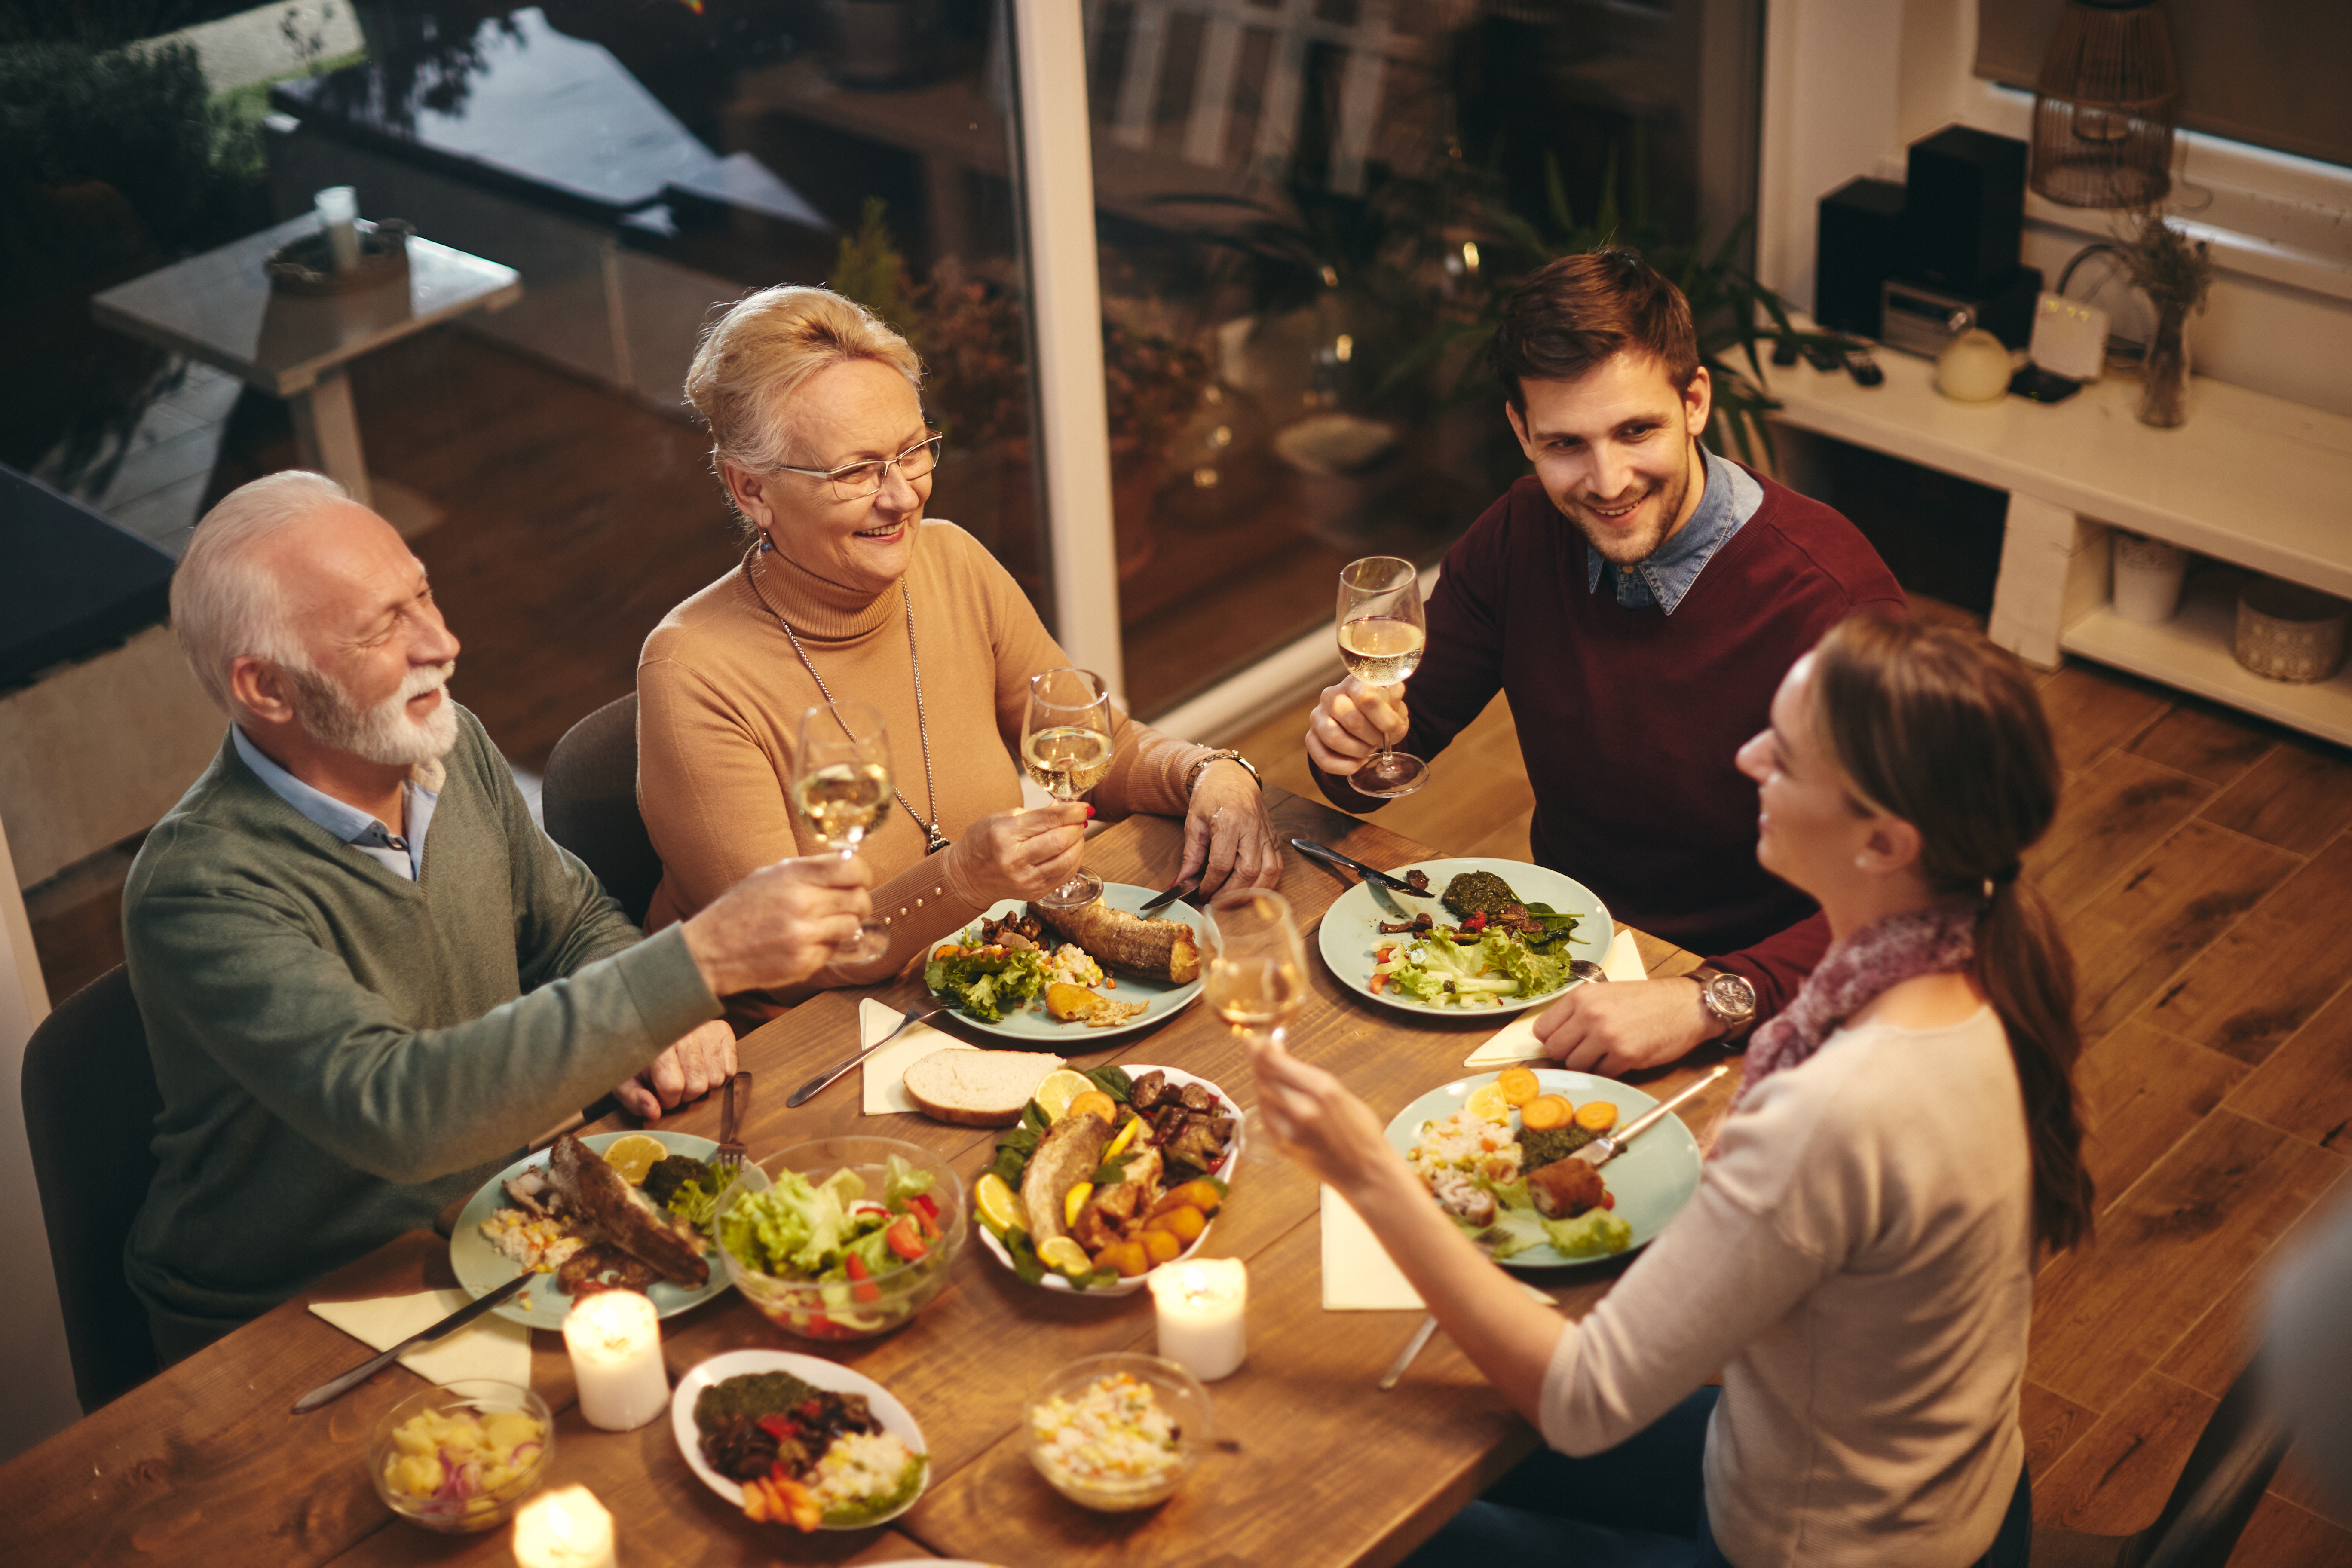 Family members having dinner | Source: Shutterstock